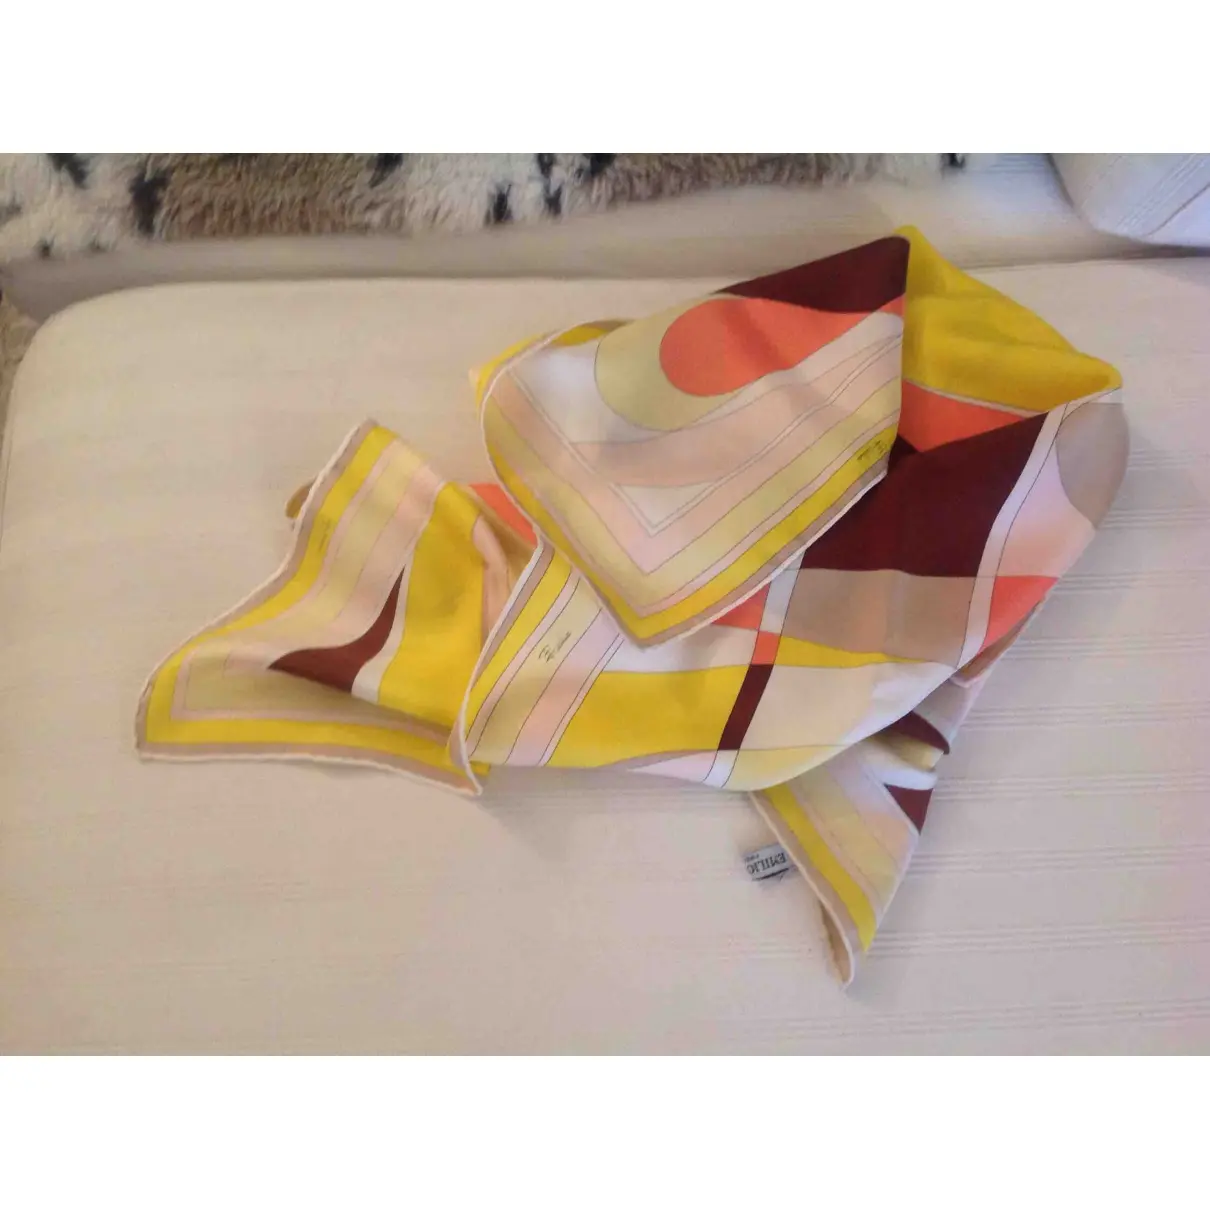 Emilio Pucci Silk handkerchief for sale